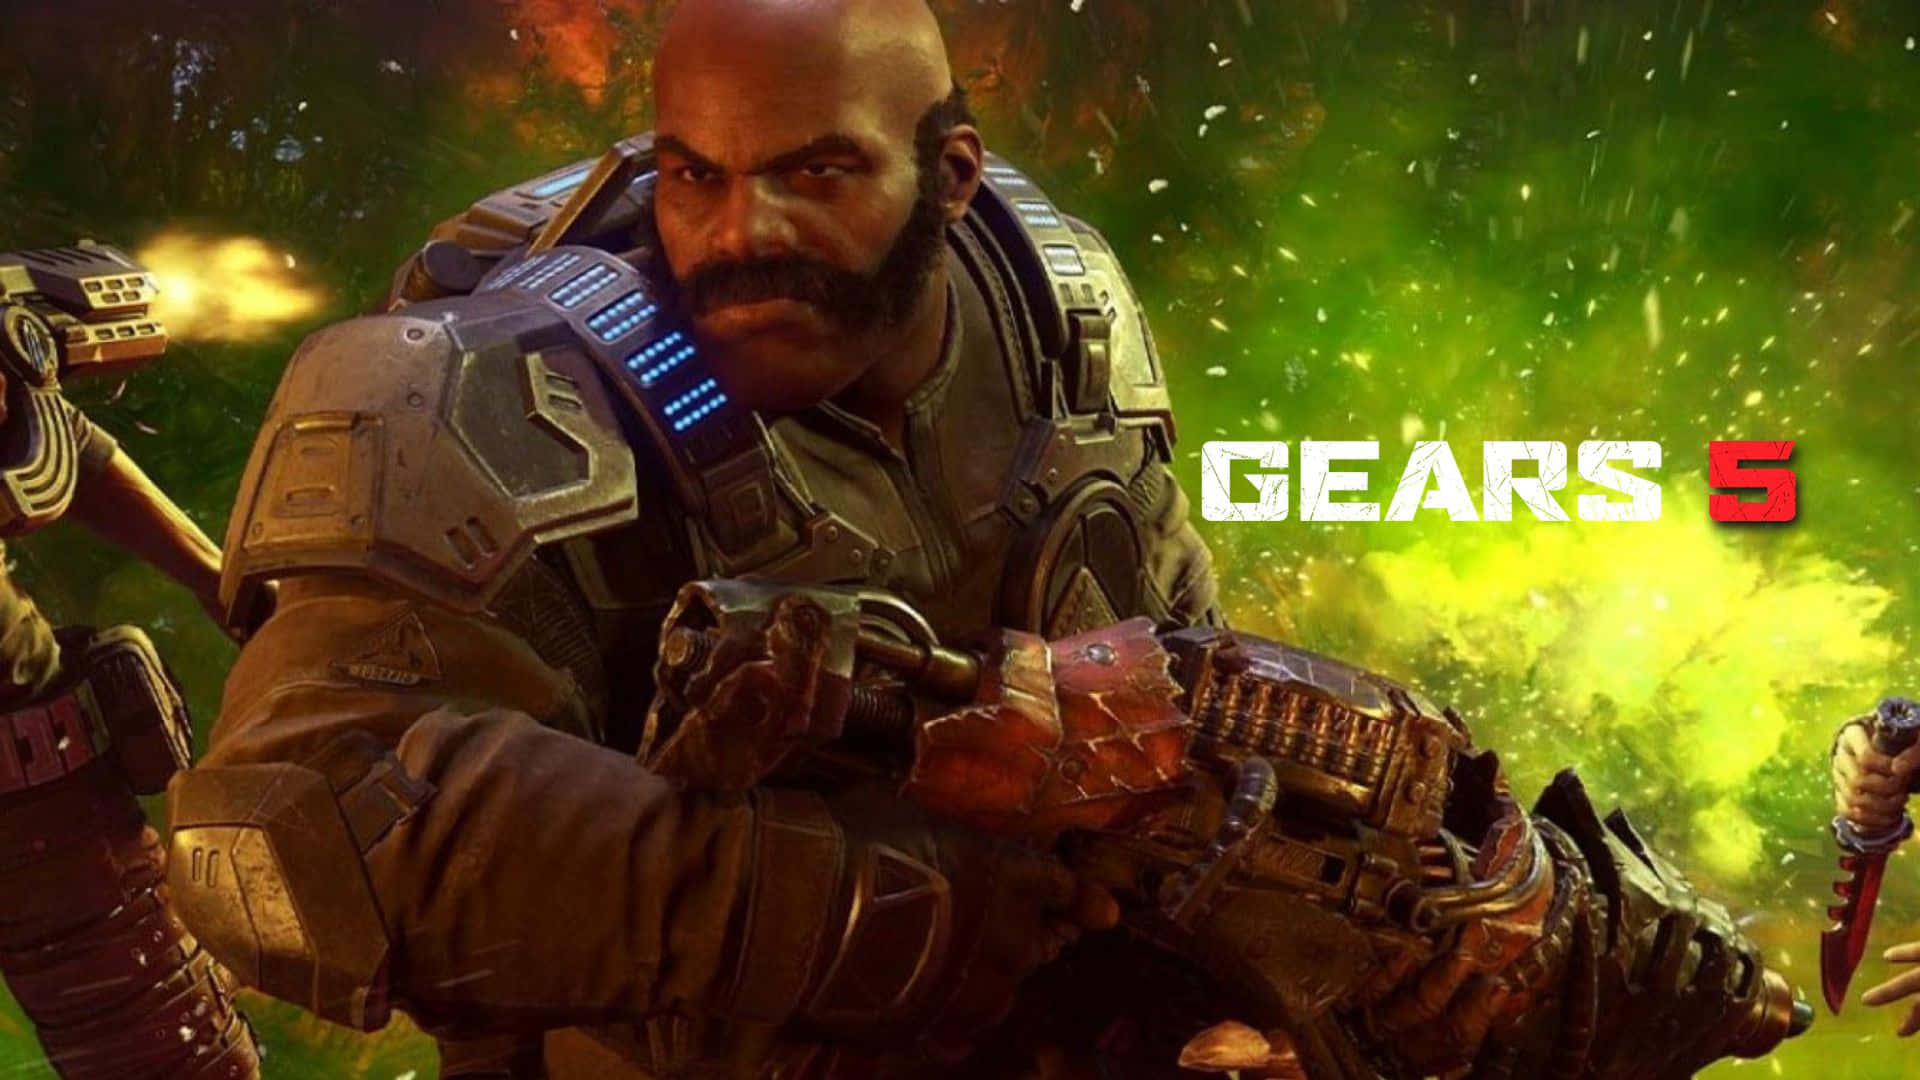 Assistaall'edizione Definitiva Dello Spettacolare Sparatutto Epico D'azione, Gears Of War 5!